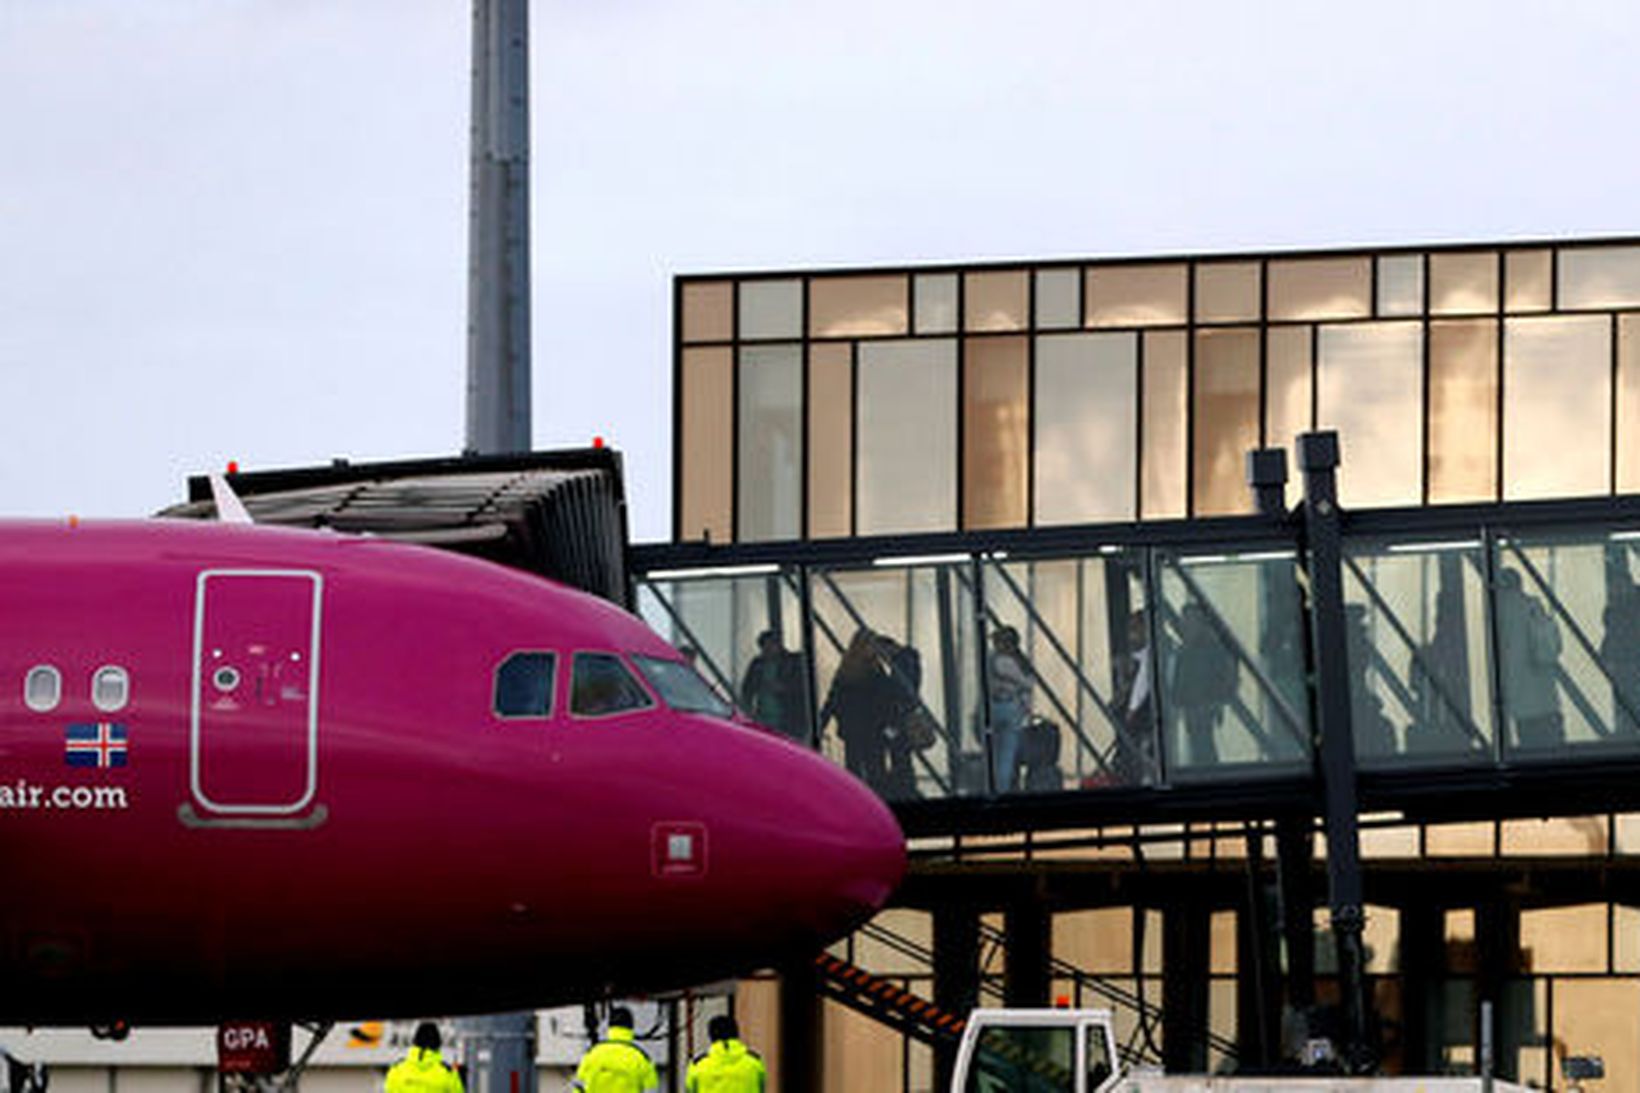 Airport Associates þjónustar meðal annars flugfélag WOW á Keflavíkurflugvelli.